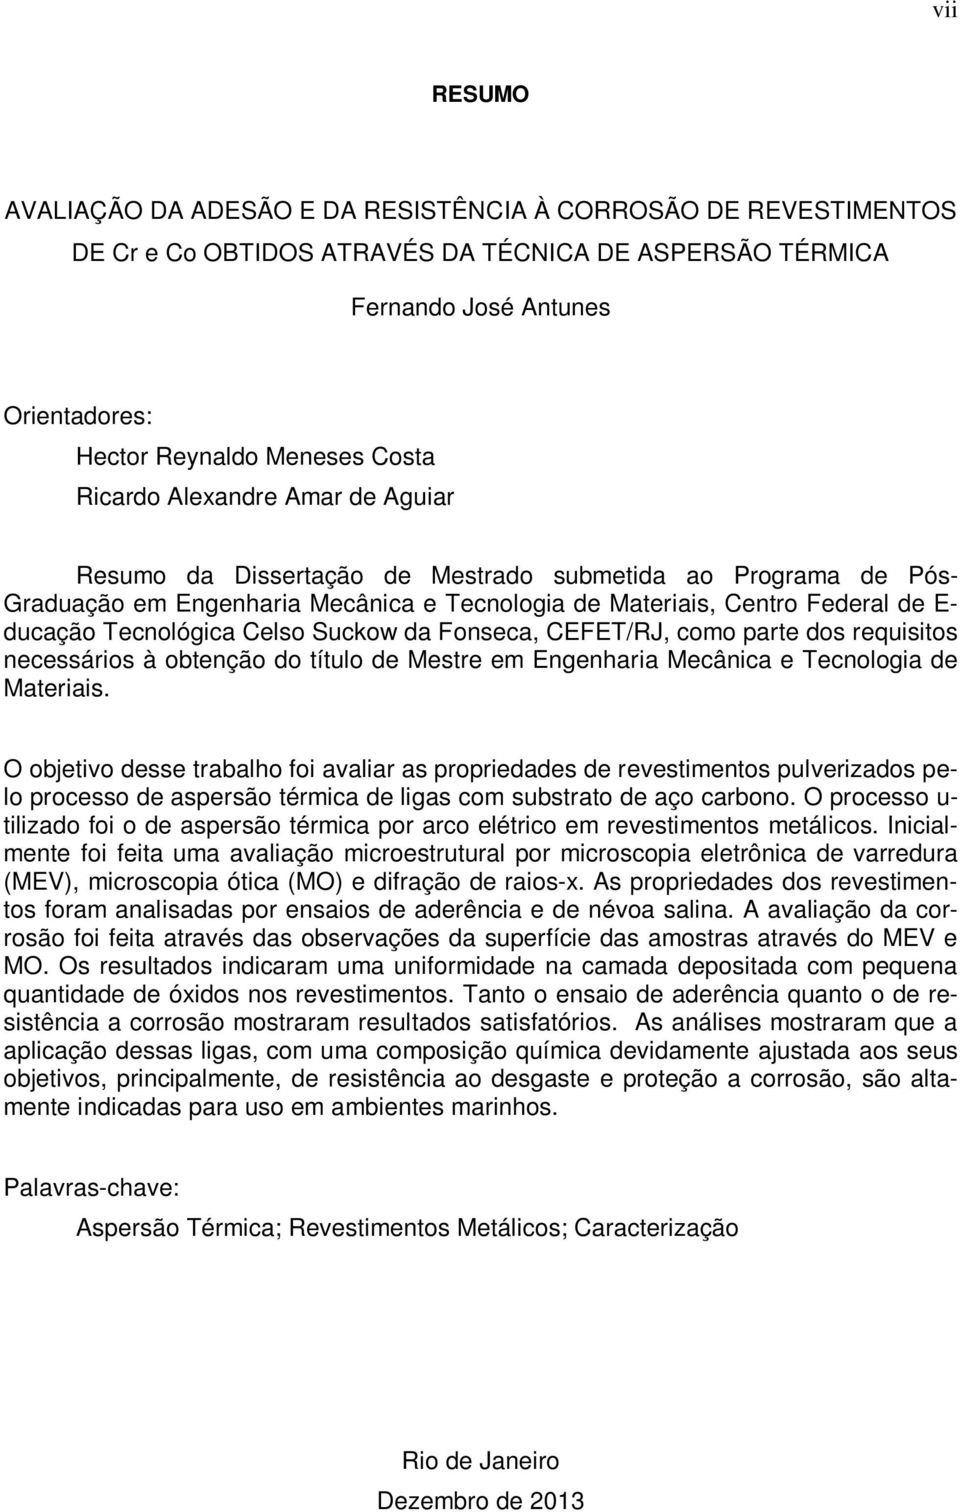 Celso Suckow da Fonseca, CEFET/RJ, como parte dos requisitos necessários à obtenção do título de Mestre em Engenharia Mecânica e Tecnologia de Materiais.